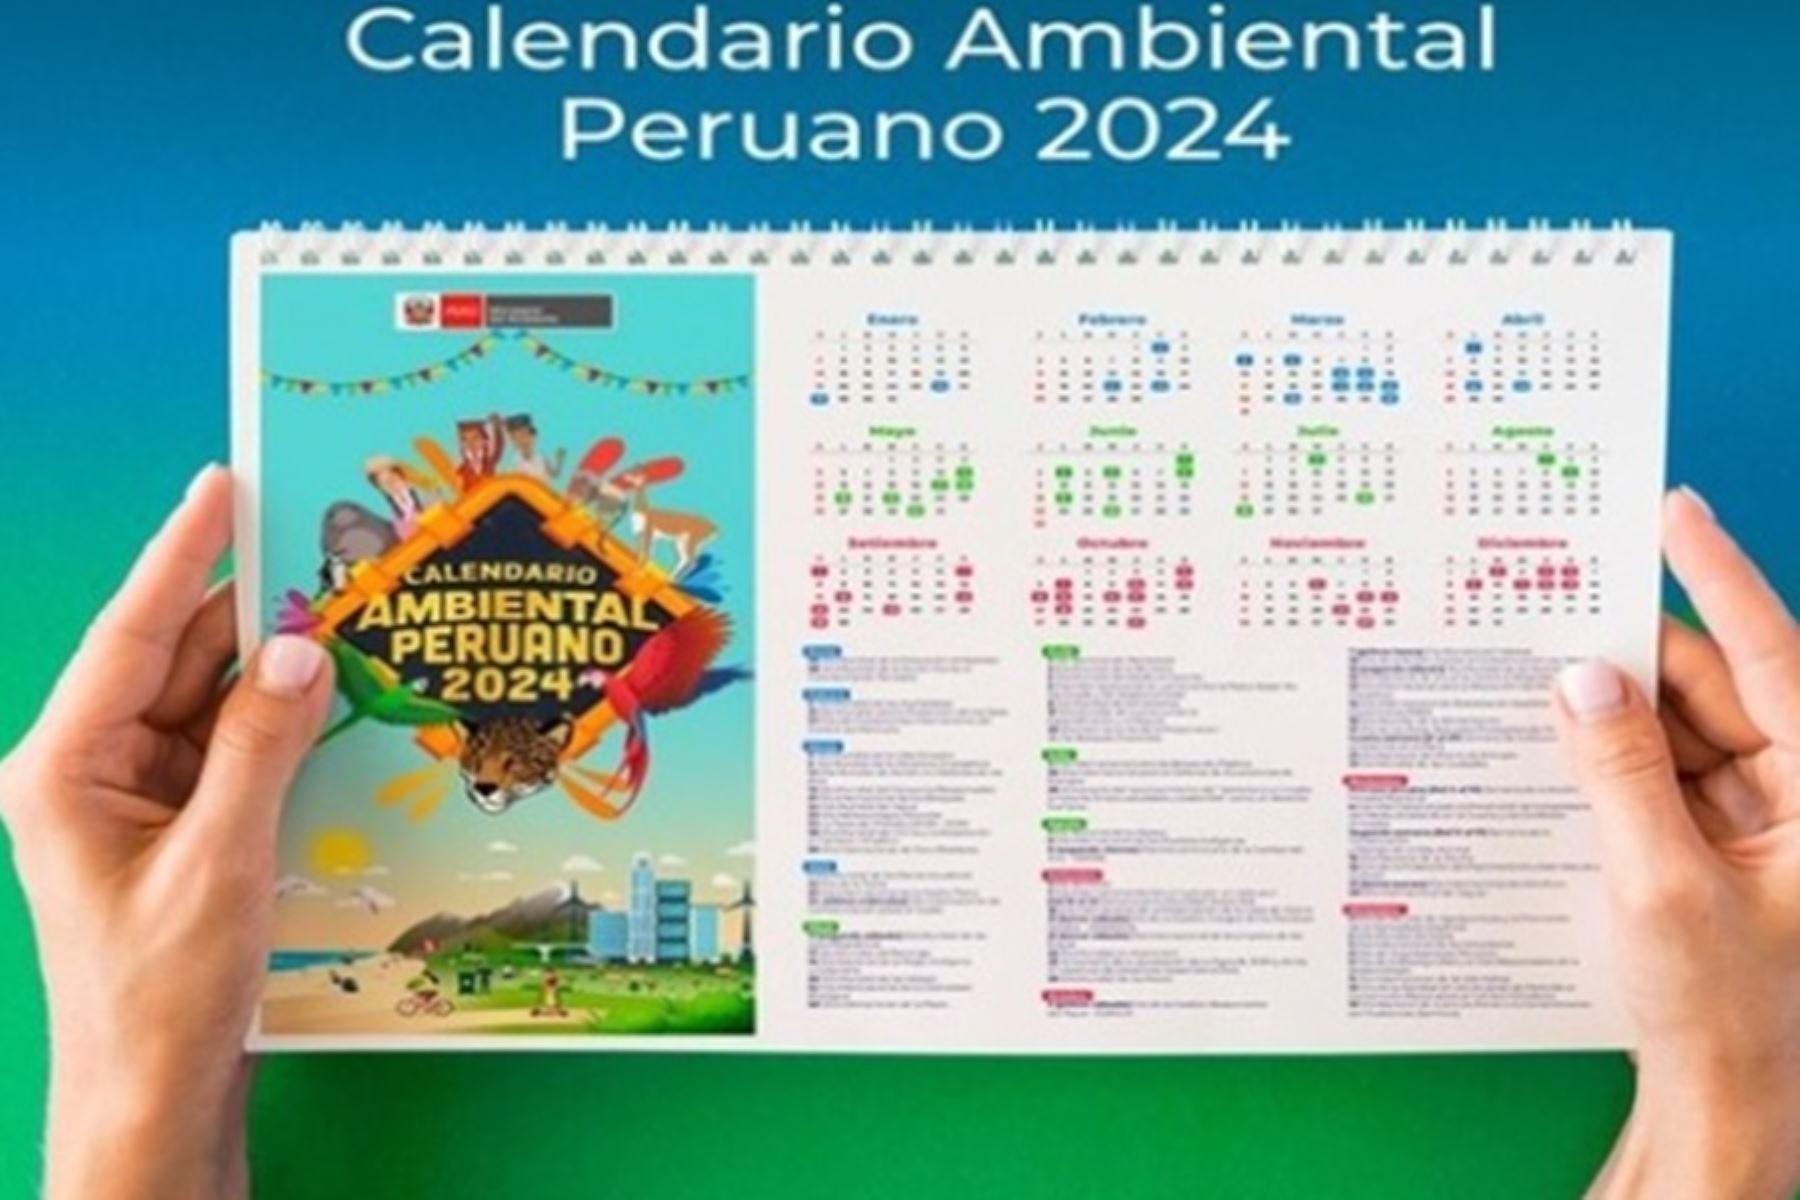 El Calendario Ambiental Peruano del 2024 es una herramienta fundamental para promover la participación activa de la ciudadanía, de forma individual o colectiva, en la protección del ambiente y de los recursos naturales.